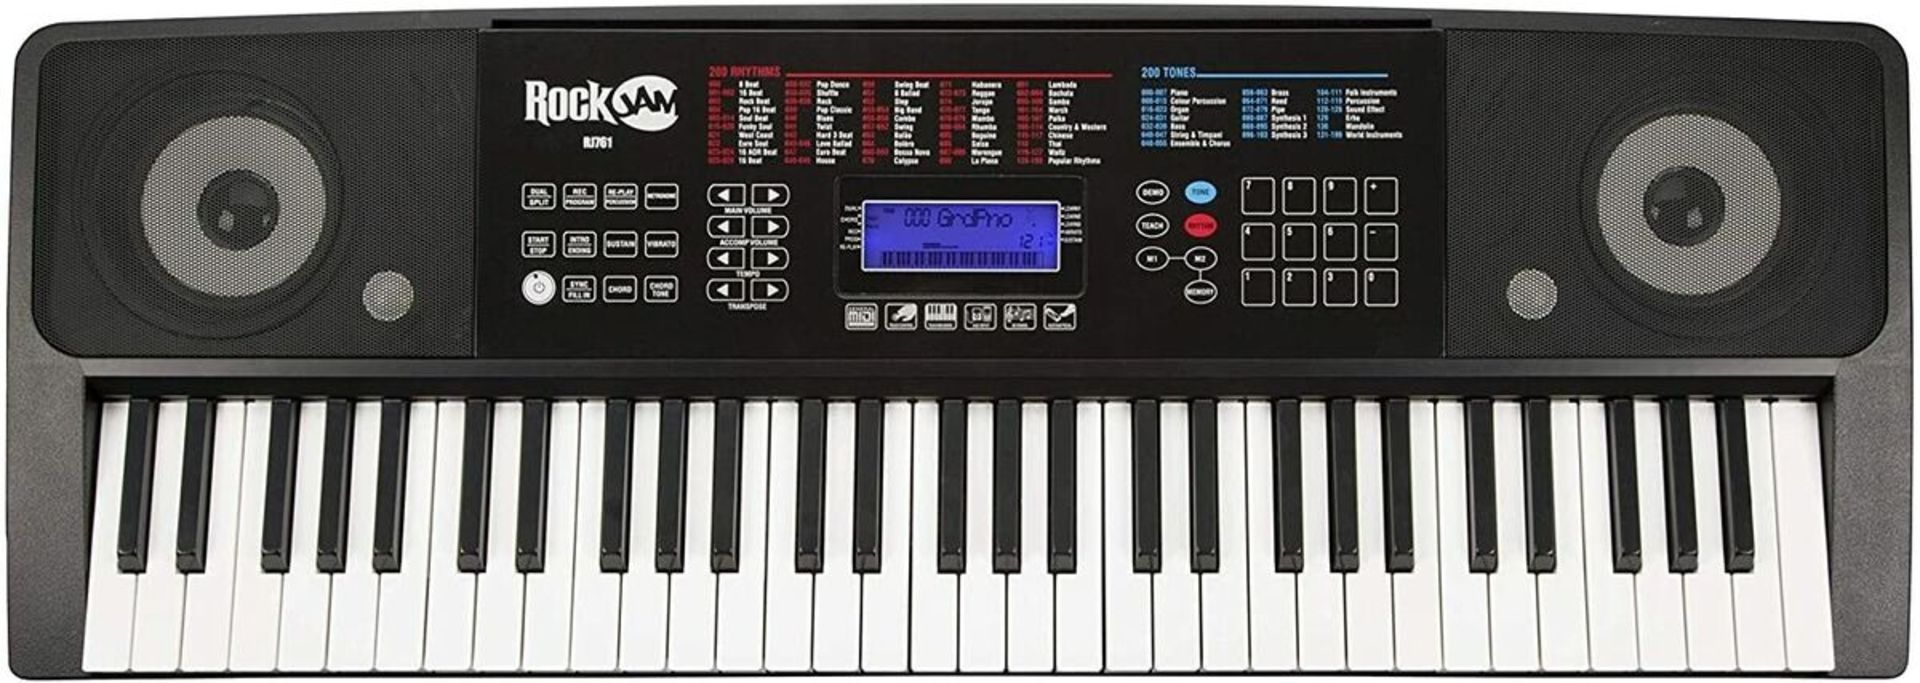 RockJam RJ761 keyboard - ER21